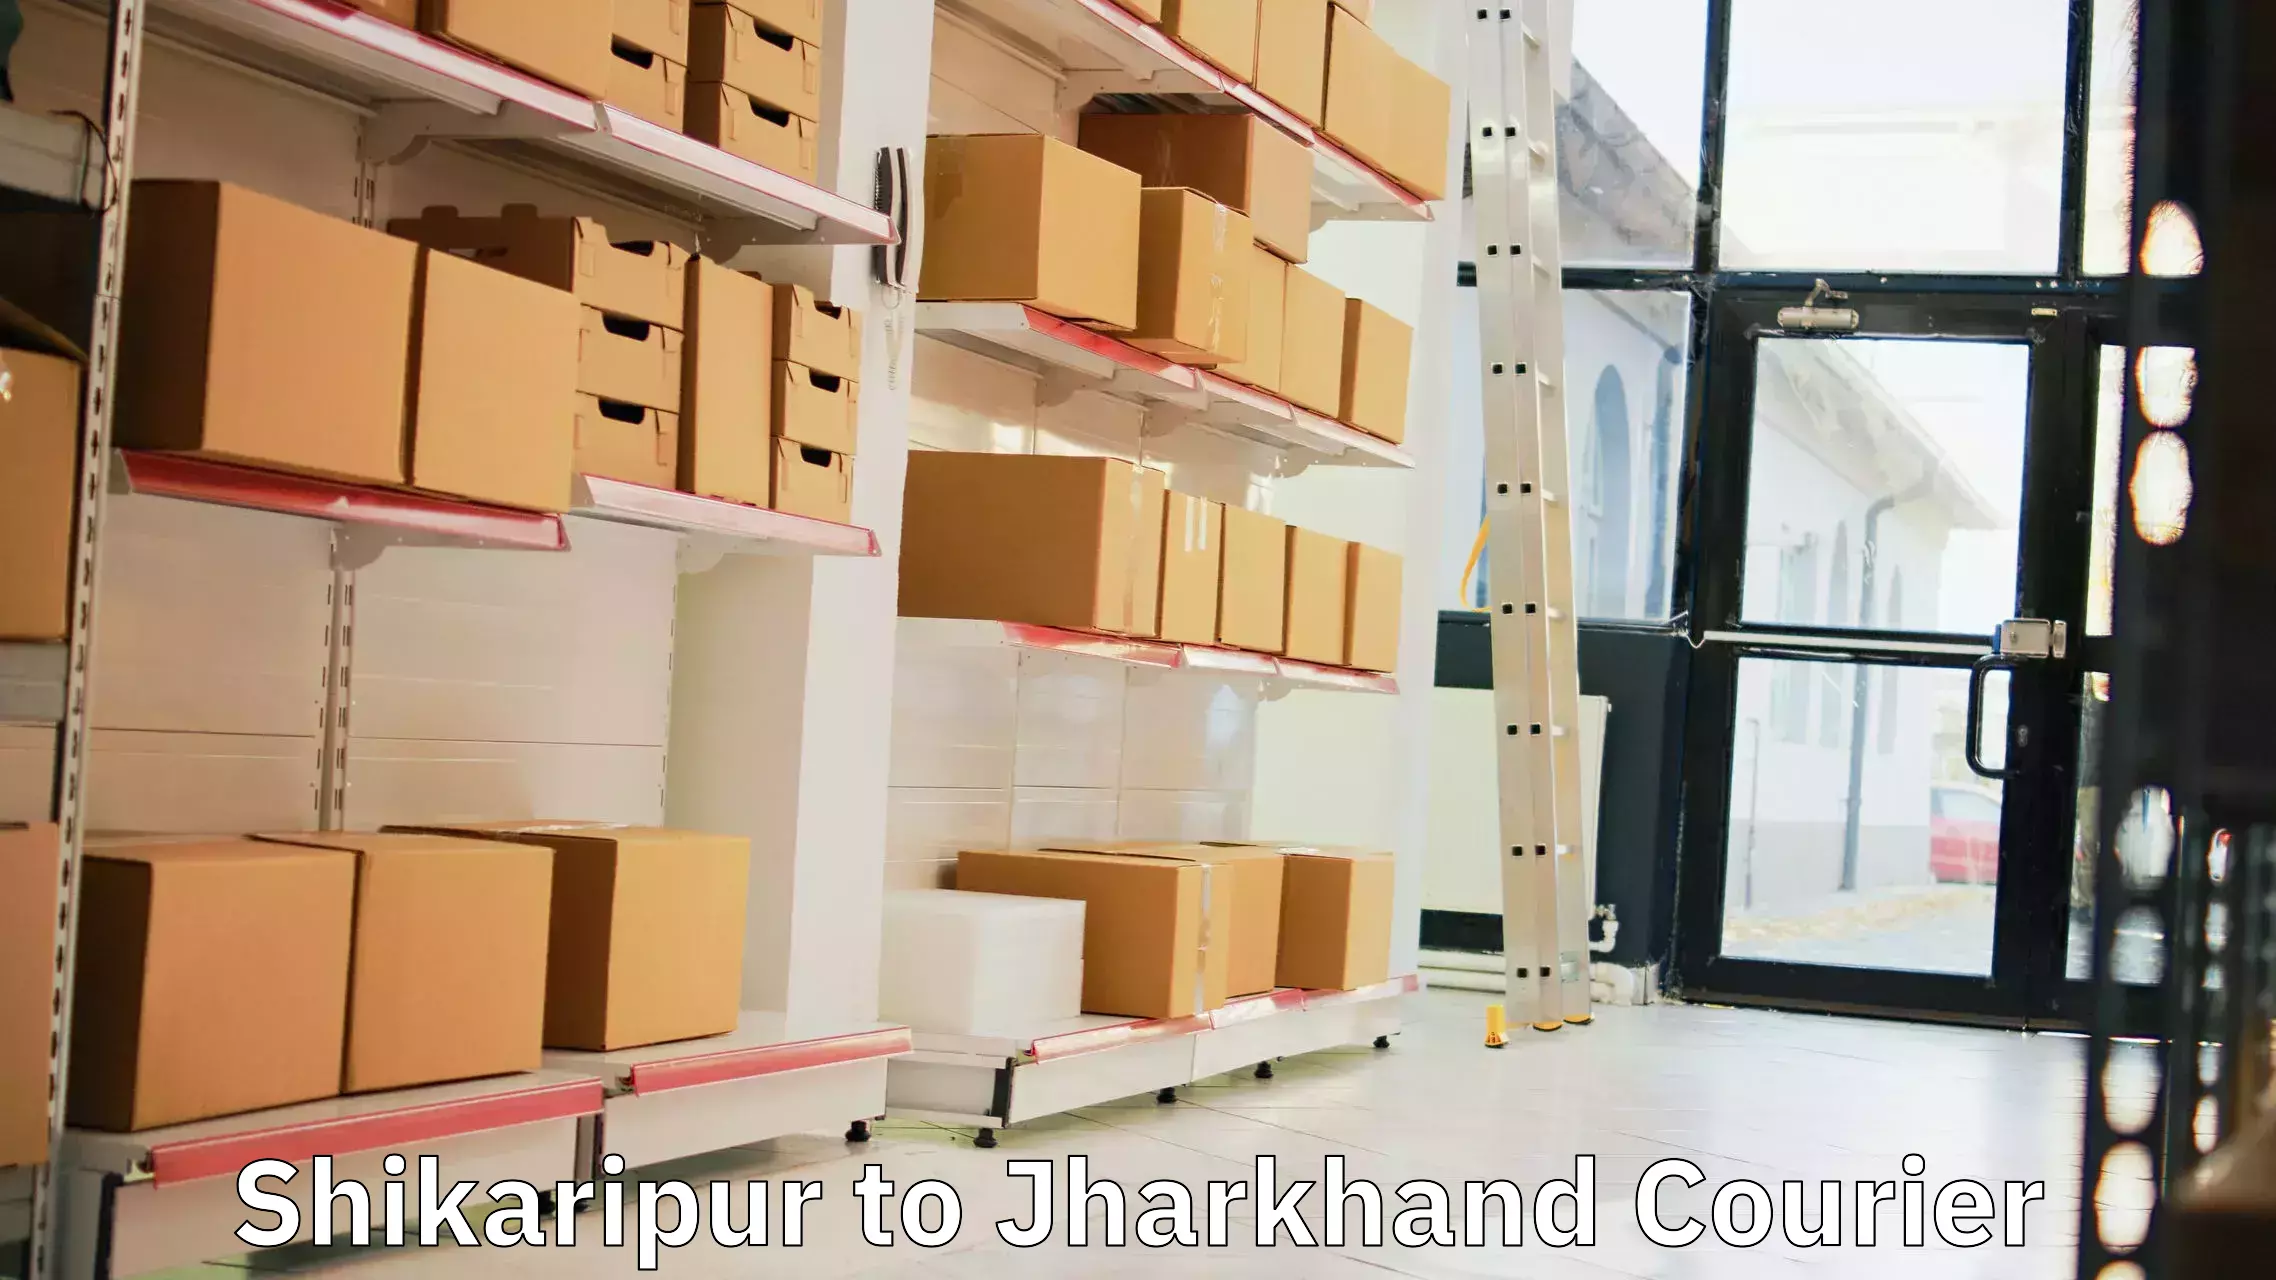 Global delivery options Shikaripur to Chandankiyari